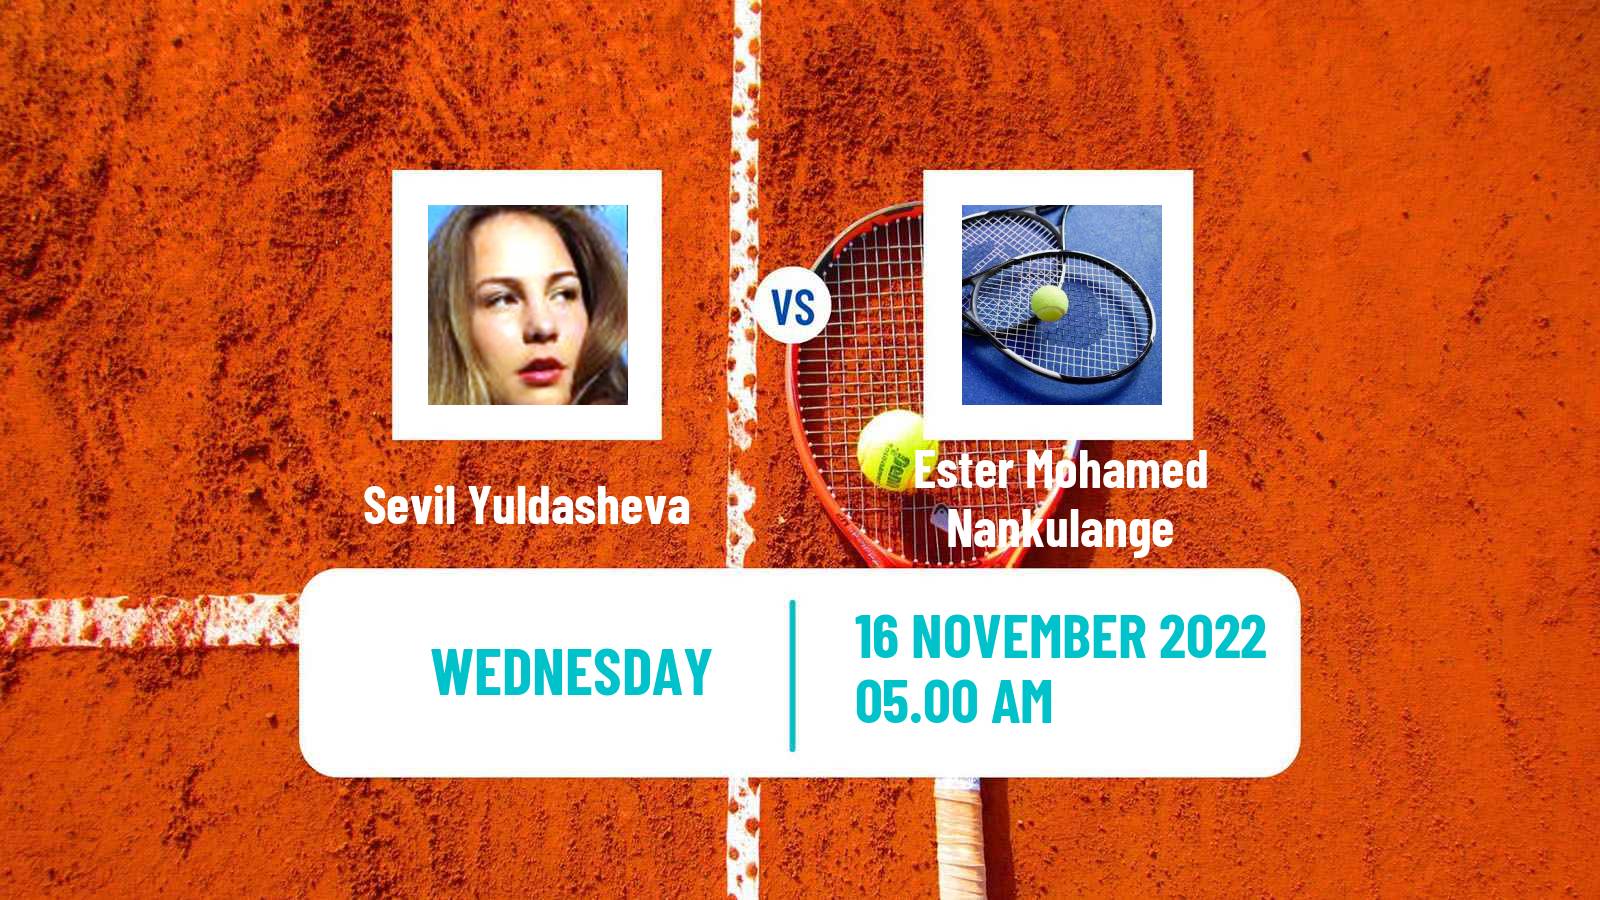 Tennis ITF Tournaments Sevil Yuldasheva - Ester Mohamed Nankulange